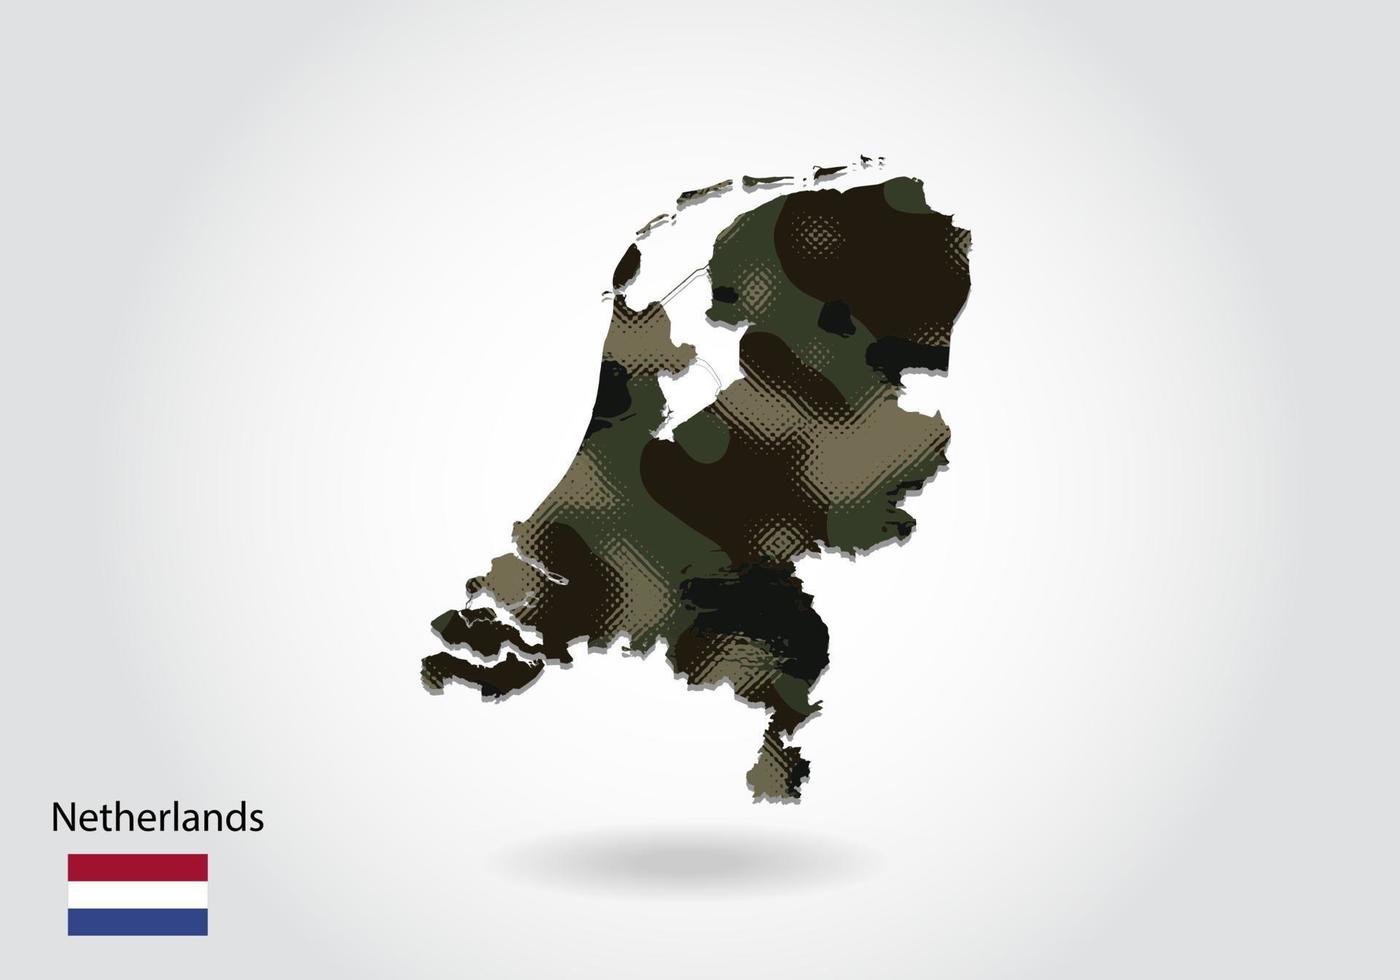 nederlandskarta med kamouflagemönster, skog - grön struktur i kartan. militärt koncept för armé, soldat och krig. vapensköld, flagga. vektor